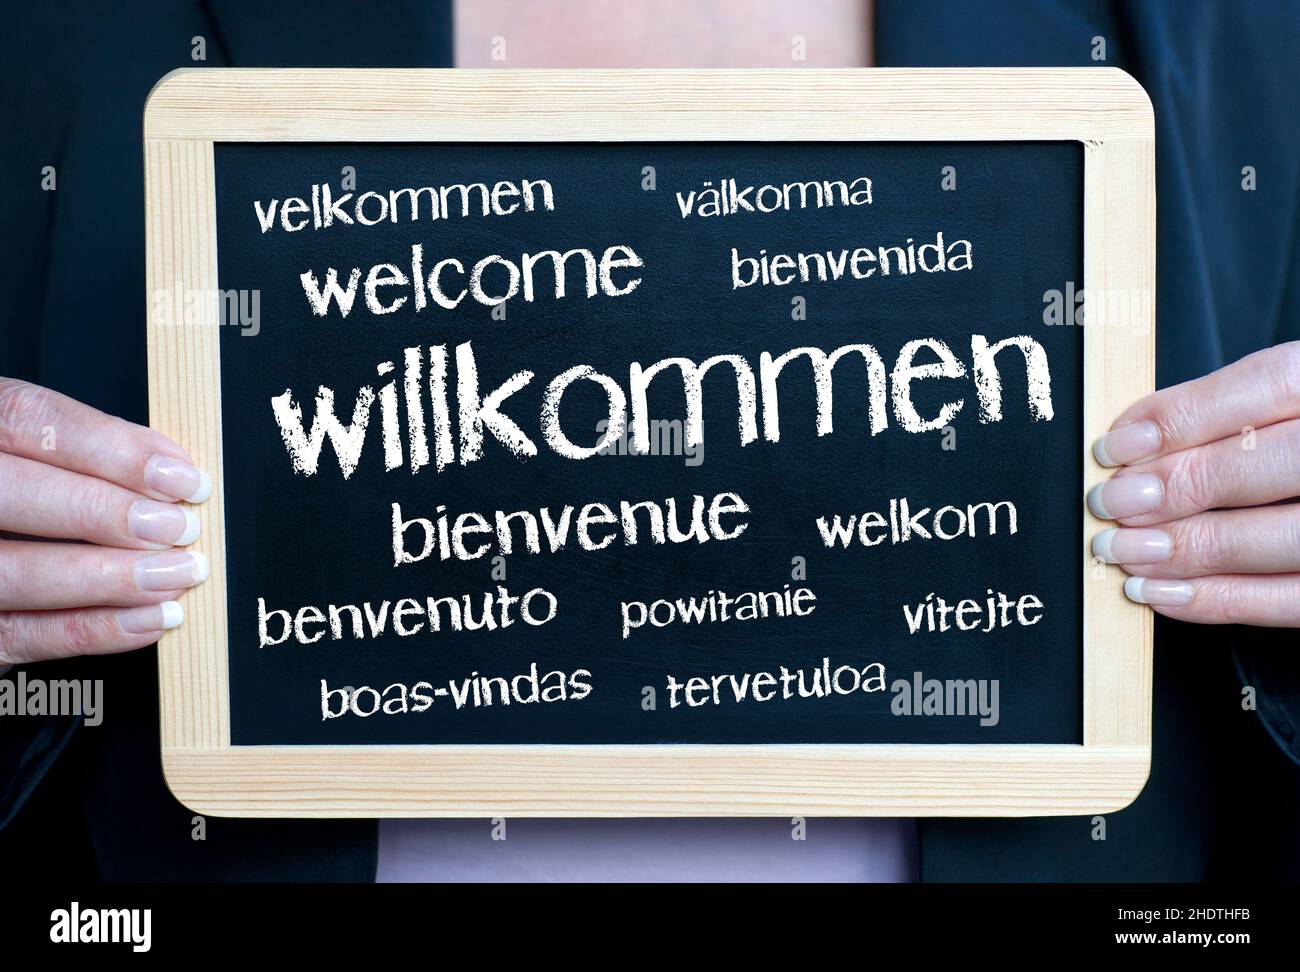 welcome, blackboard, hospitality, welcomes, blackboards Stock Photo